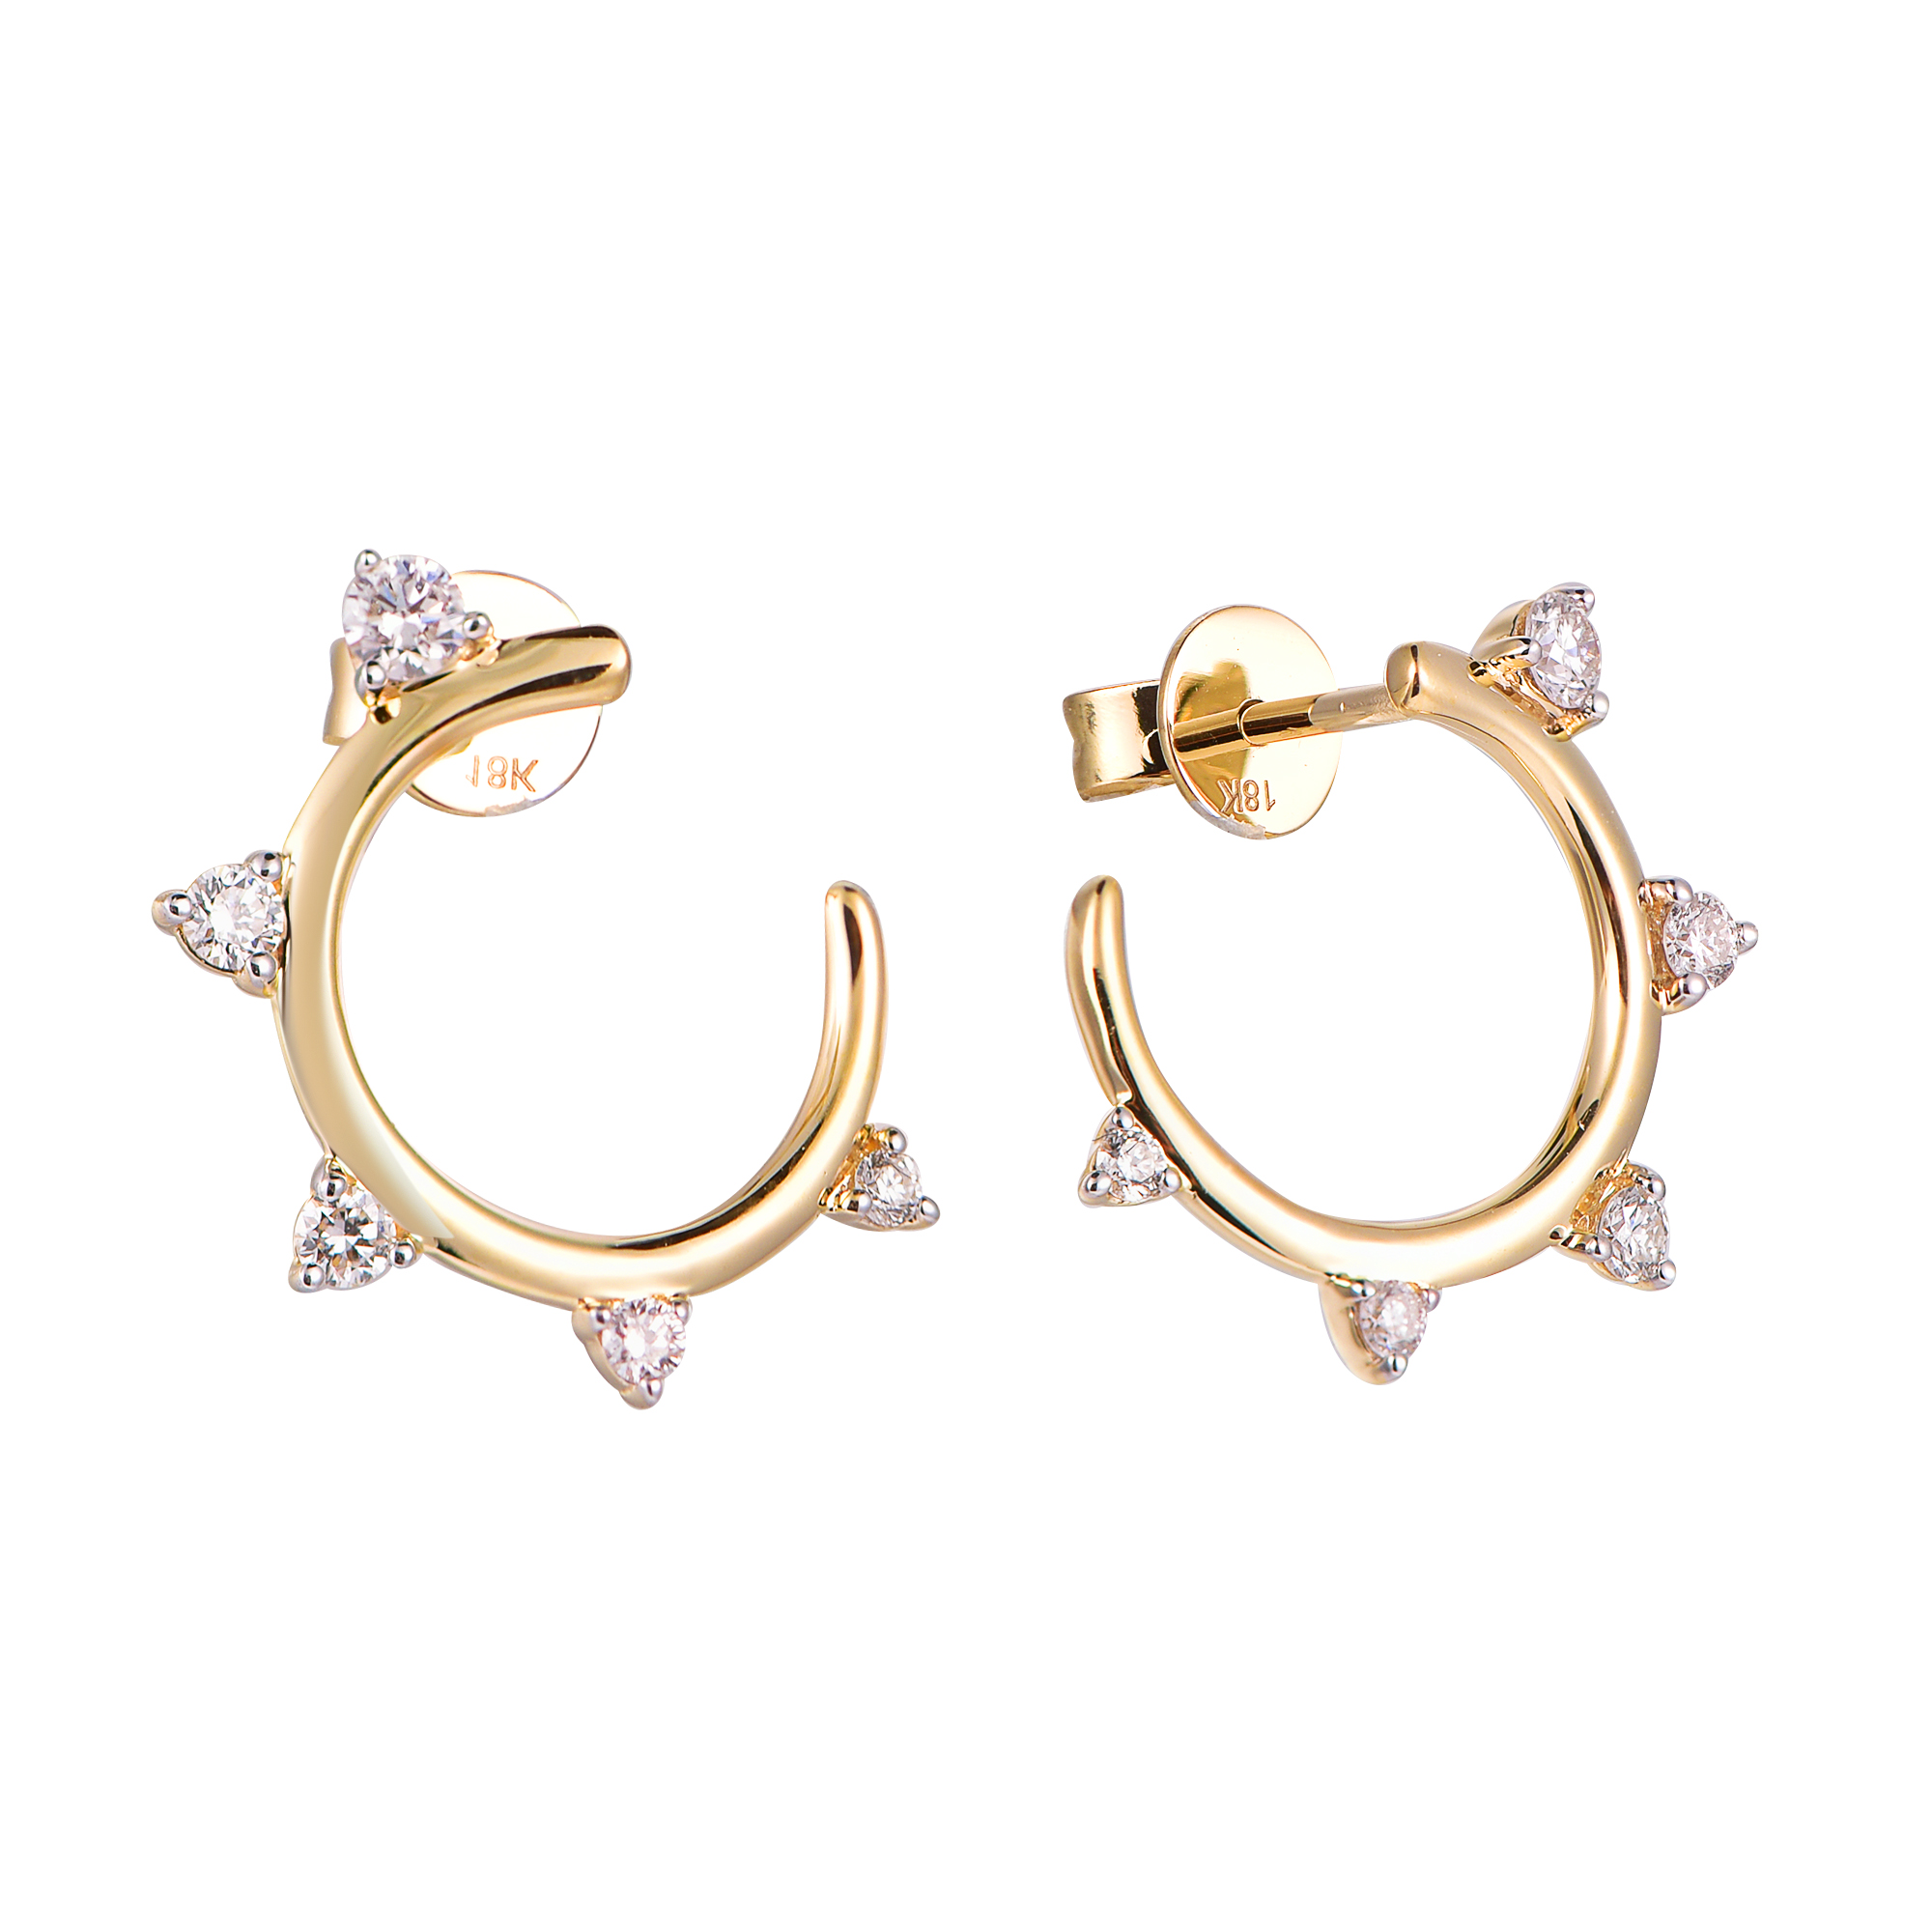 DI45719E 18K yellow gold fancy diamond earrings